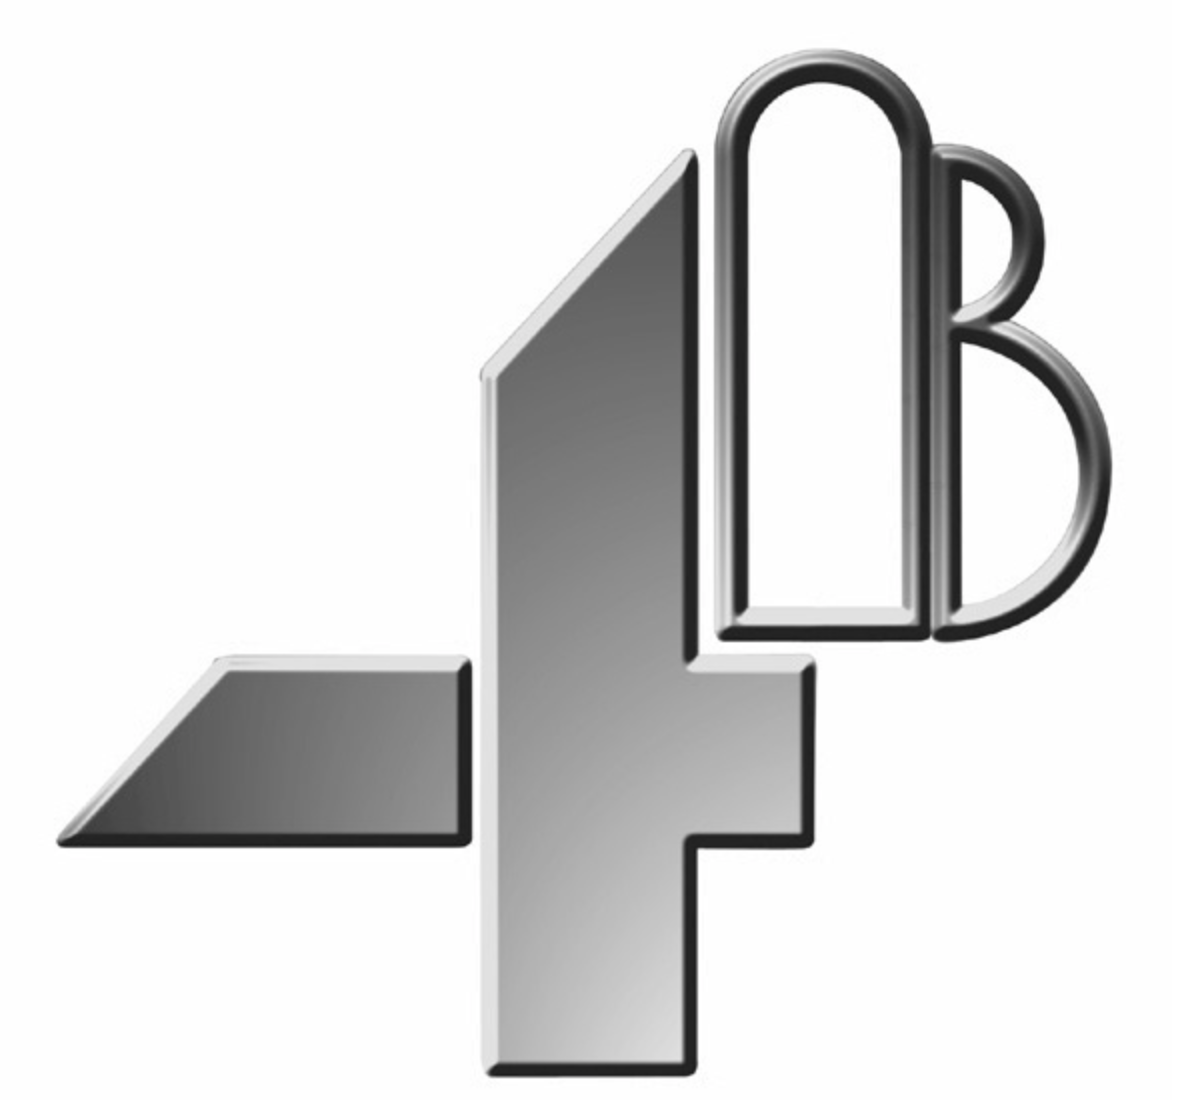 B component. (A+B)^4. B4b. A+B компонент. Braime логотип.